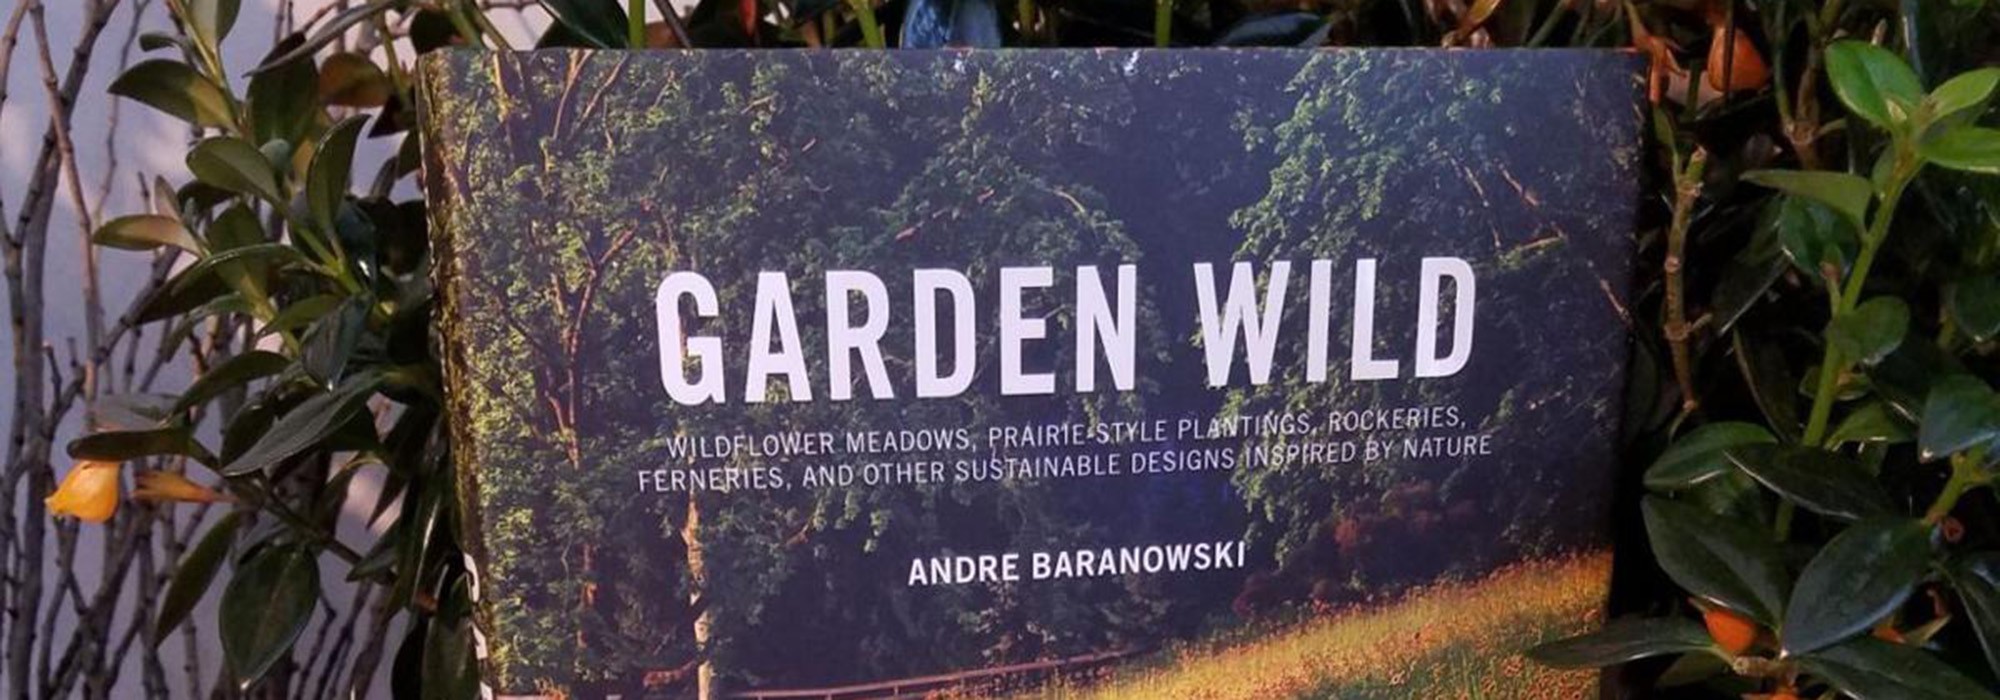 Garden Wild by Andre Baranowski